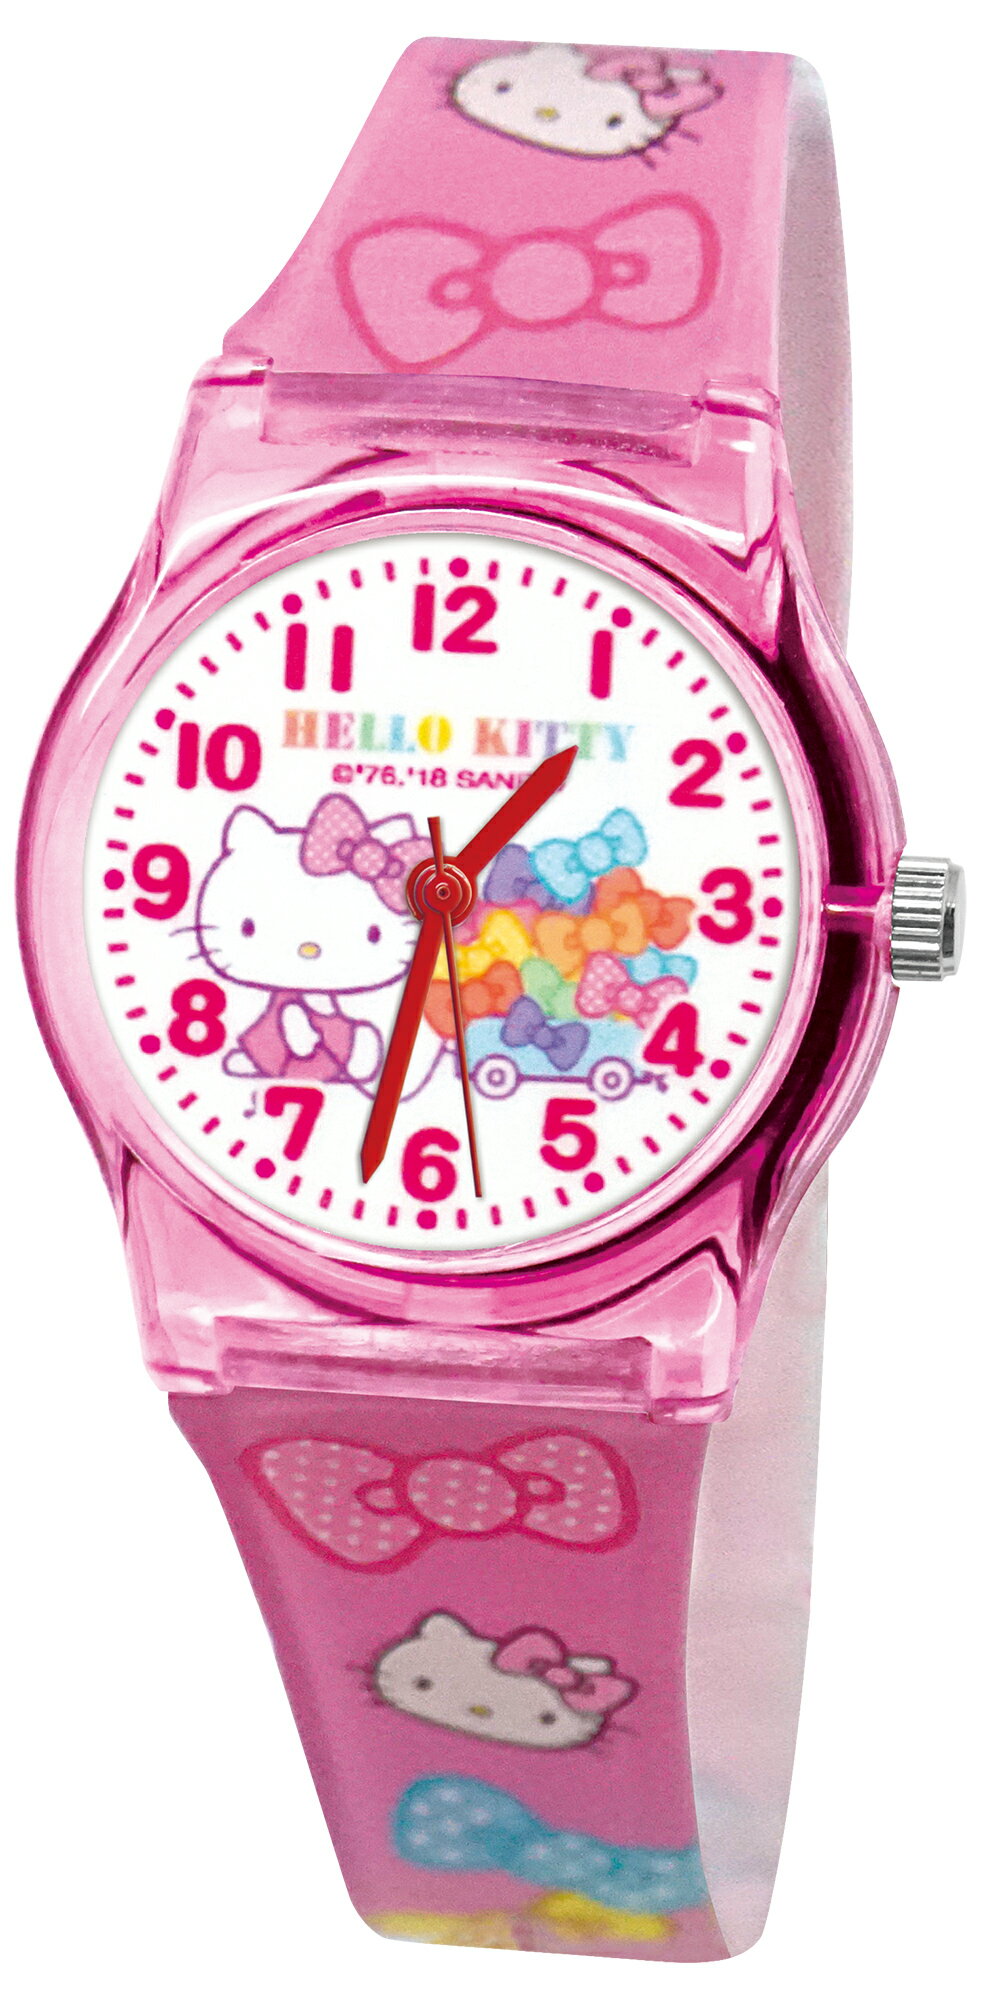 【免運】【兒童卡通錶】【凱蒂貓】【台灣製造正版授權】【保固一年】5-12歲卡通手錶 兒童手錶 S7-7001